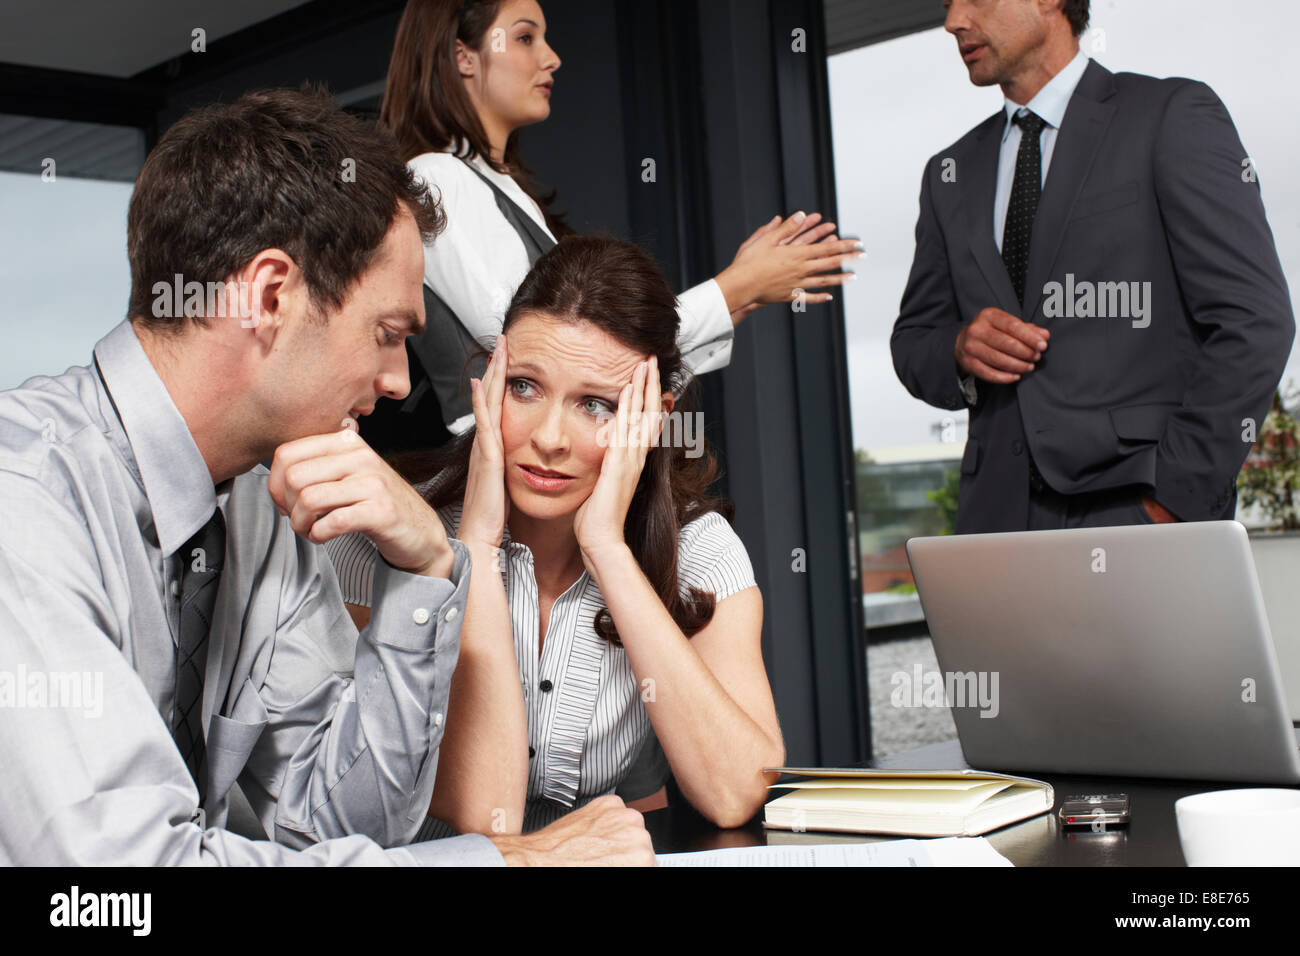 Рабочие и личные отношения. Люди в офисе разговаривают. Шум в офисе. Женщины ругаются в офисе. Общение коллег в офисе.